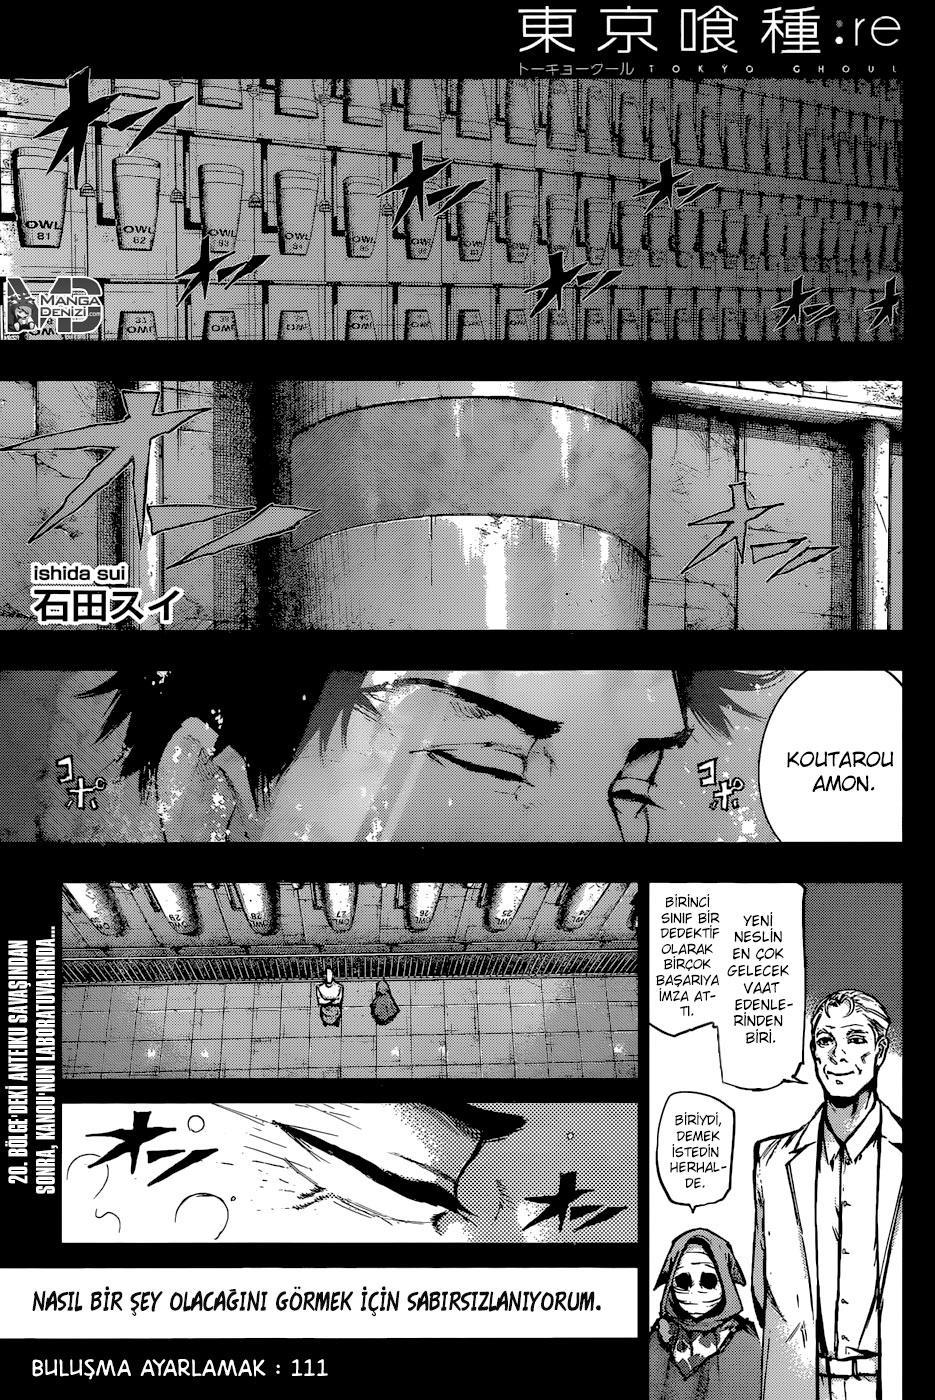 Tokyo Ghoul: RE mangasının 111 bölümünün 2. sayfasını okuyorsunuz.